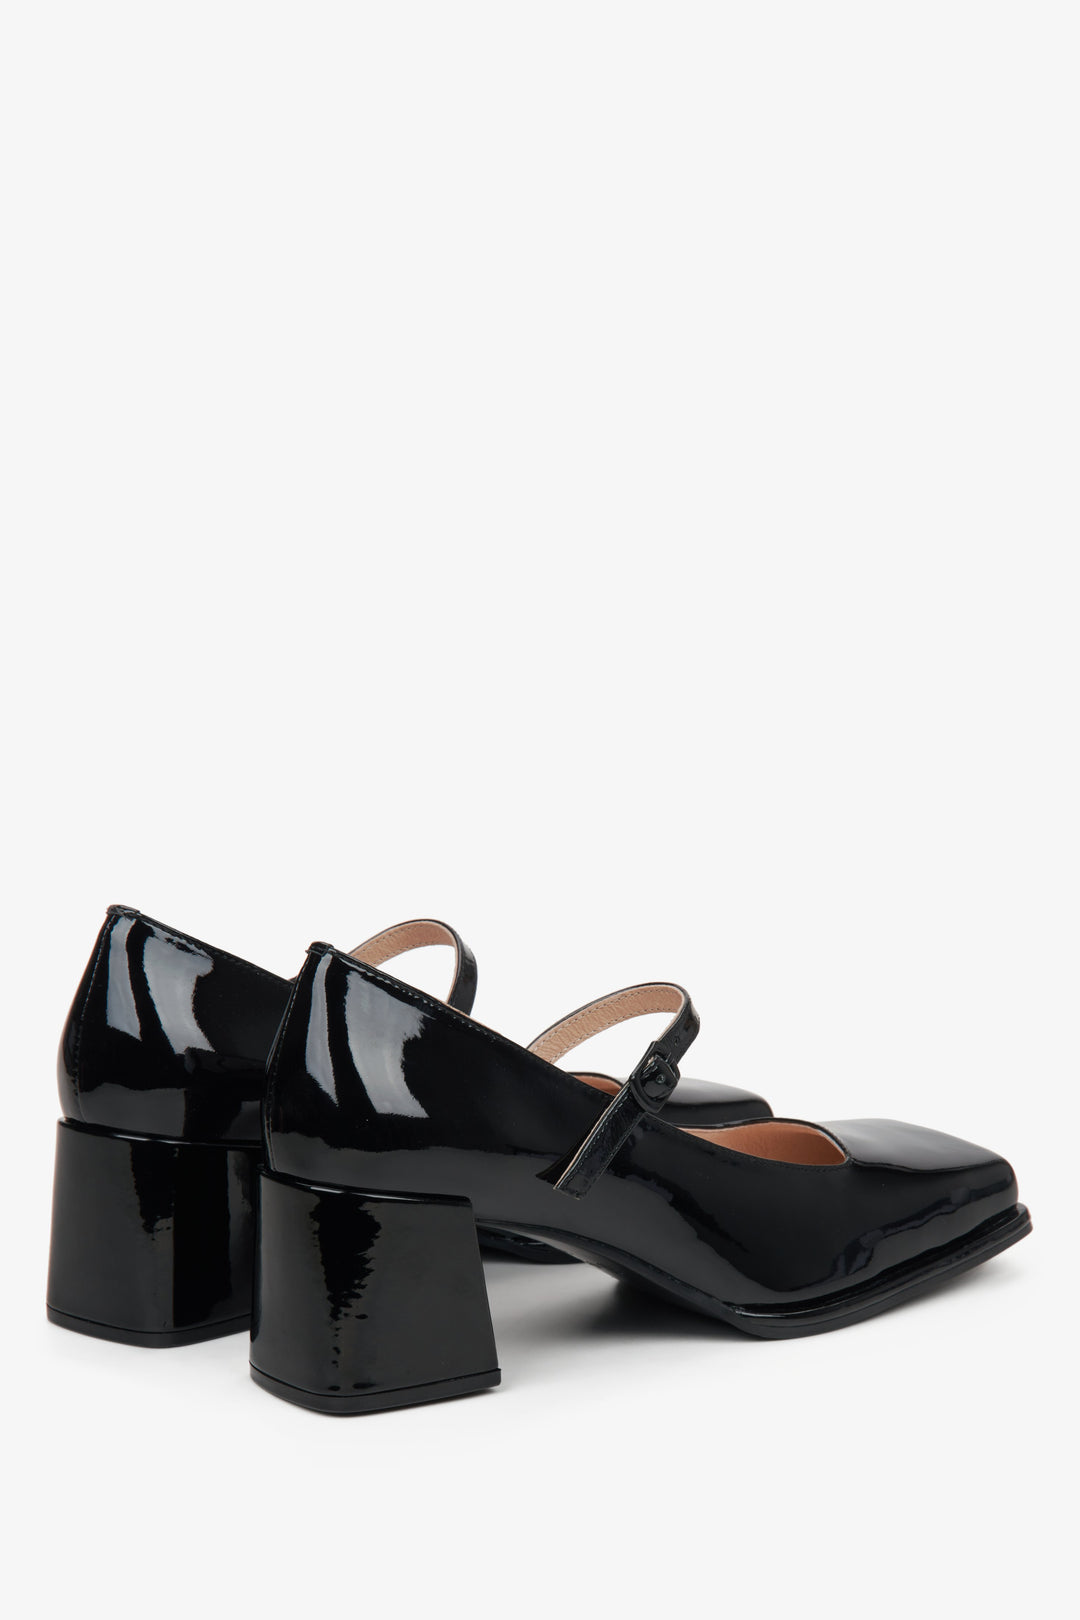 Damskie lakierowane czółenka damskie Estro w kolorze czarnym- zbliżenie na zapiętek i linię boczną butów.